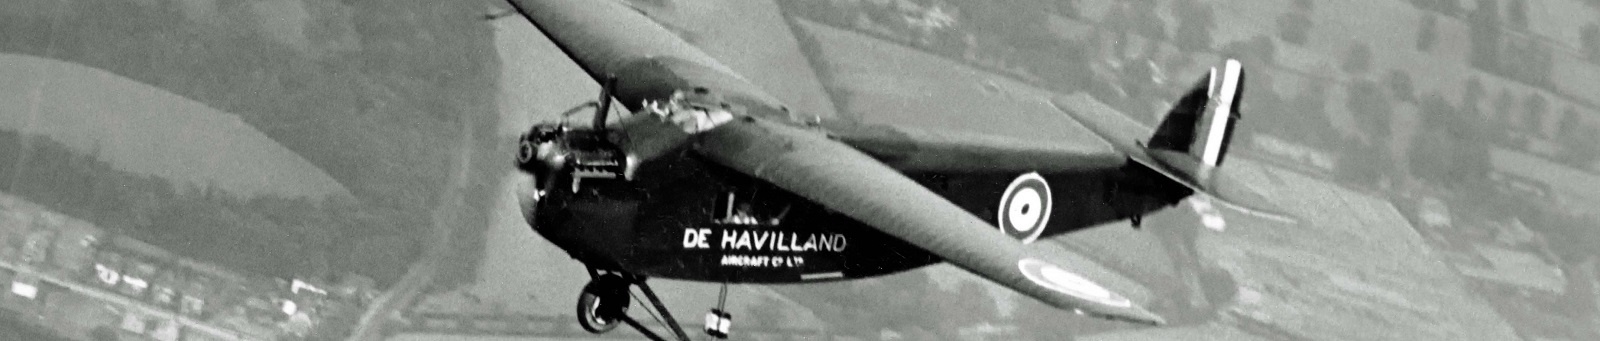 De Havilland DH29 Doncaster